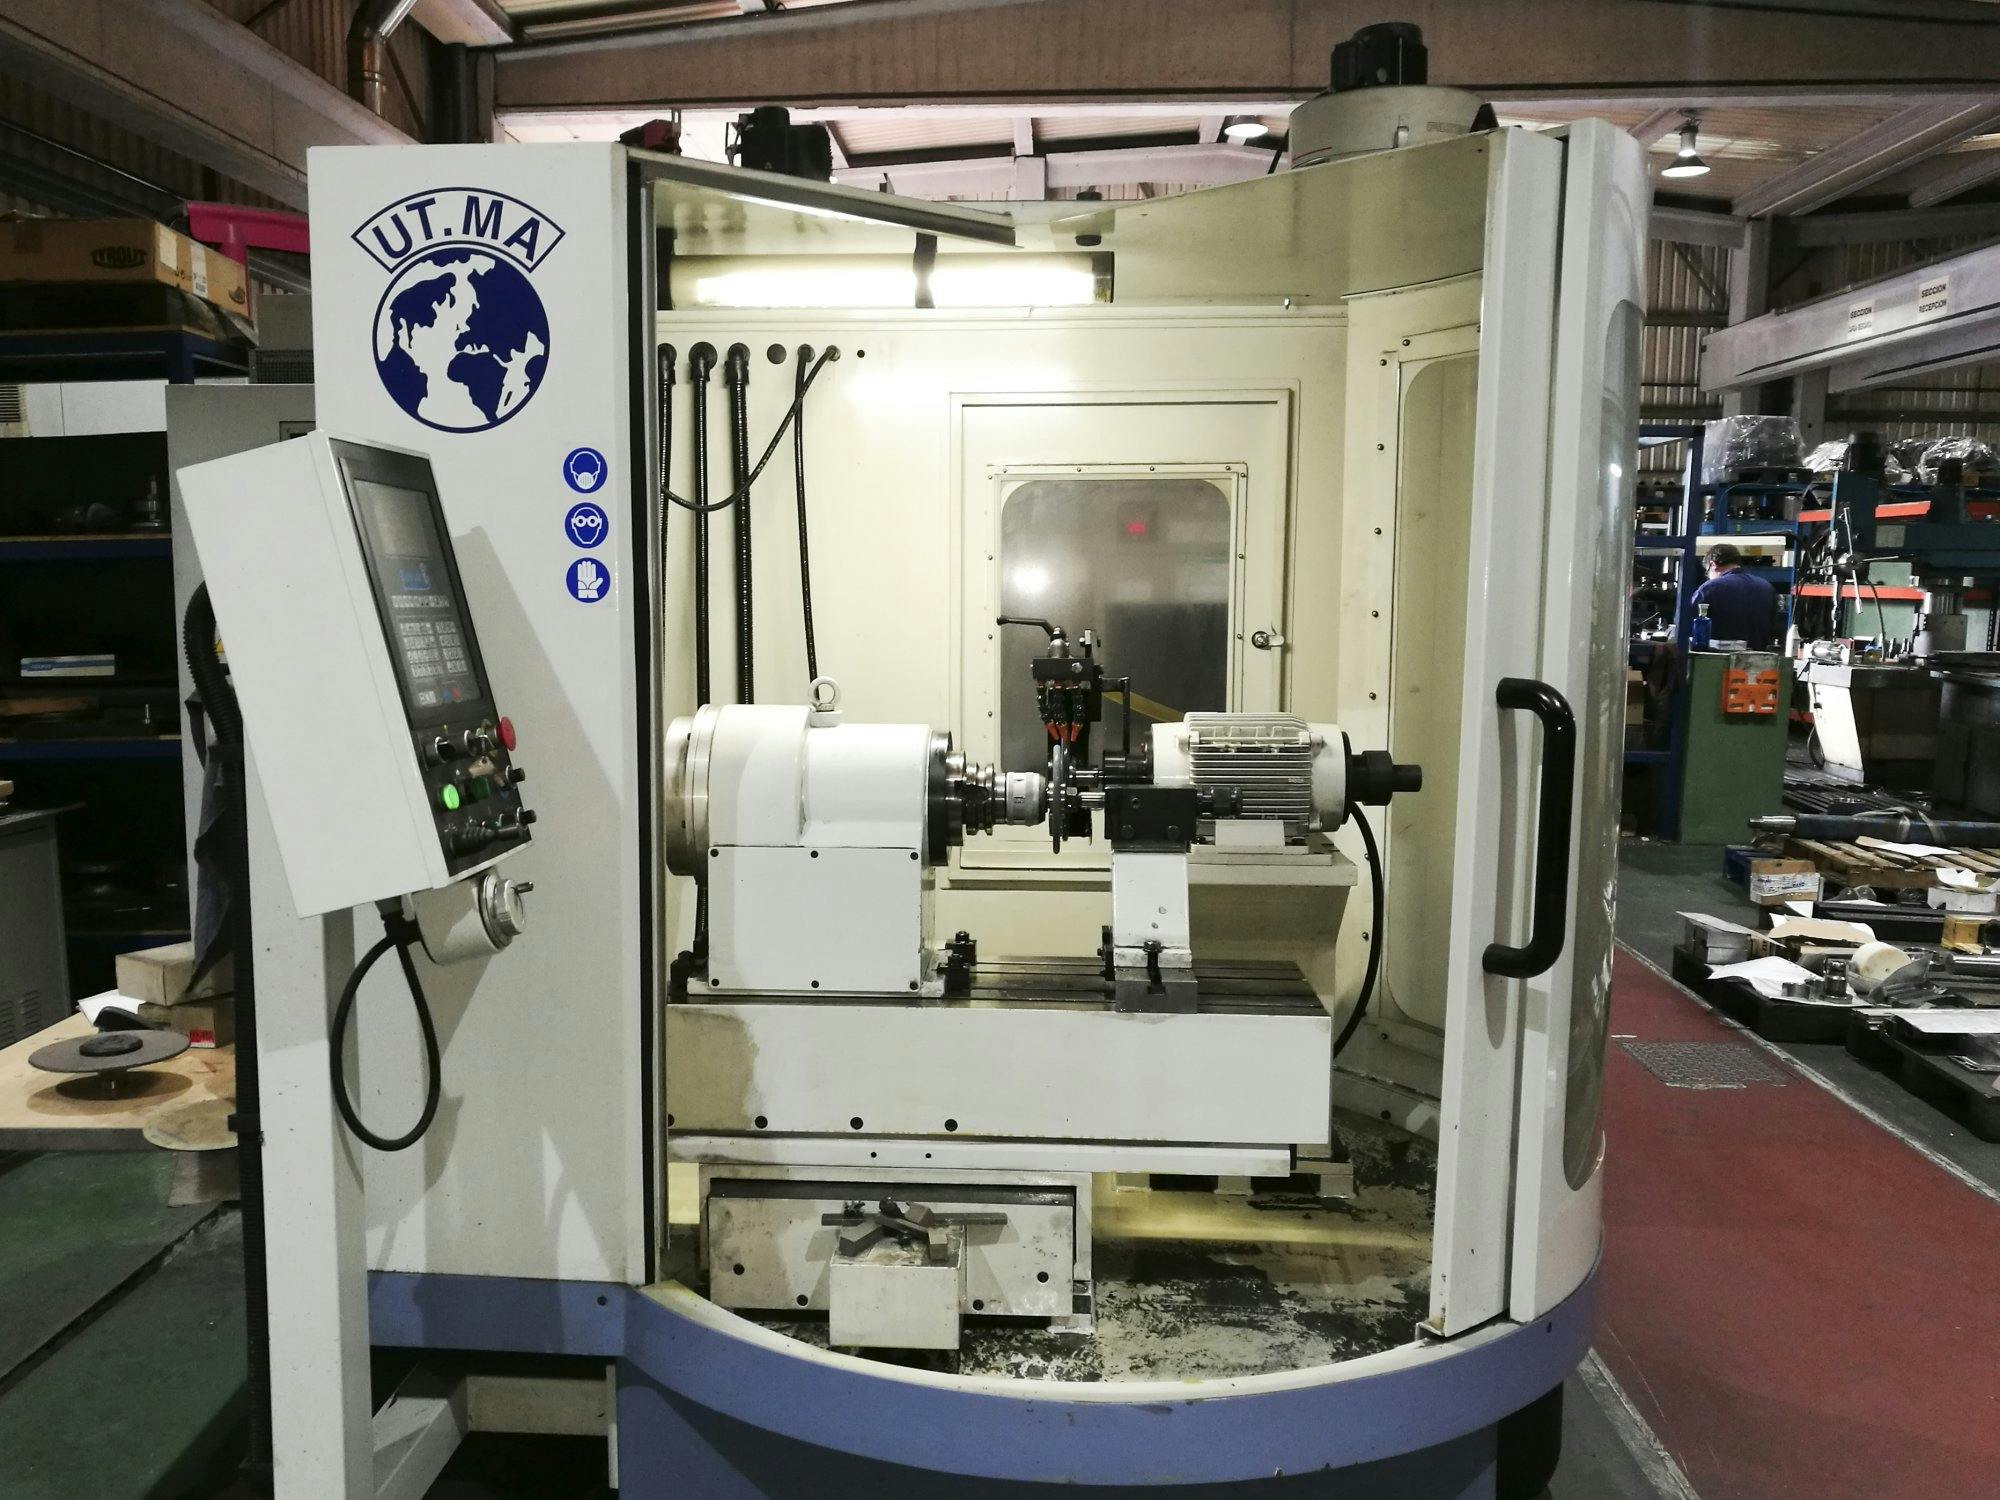 Vooraanzicht  van UT.MA P20 CNC machine